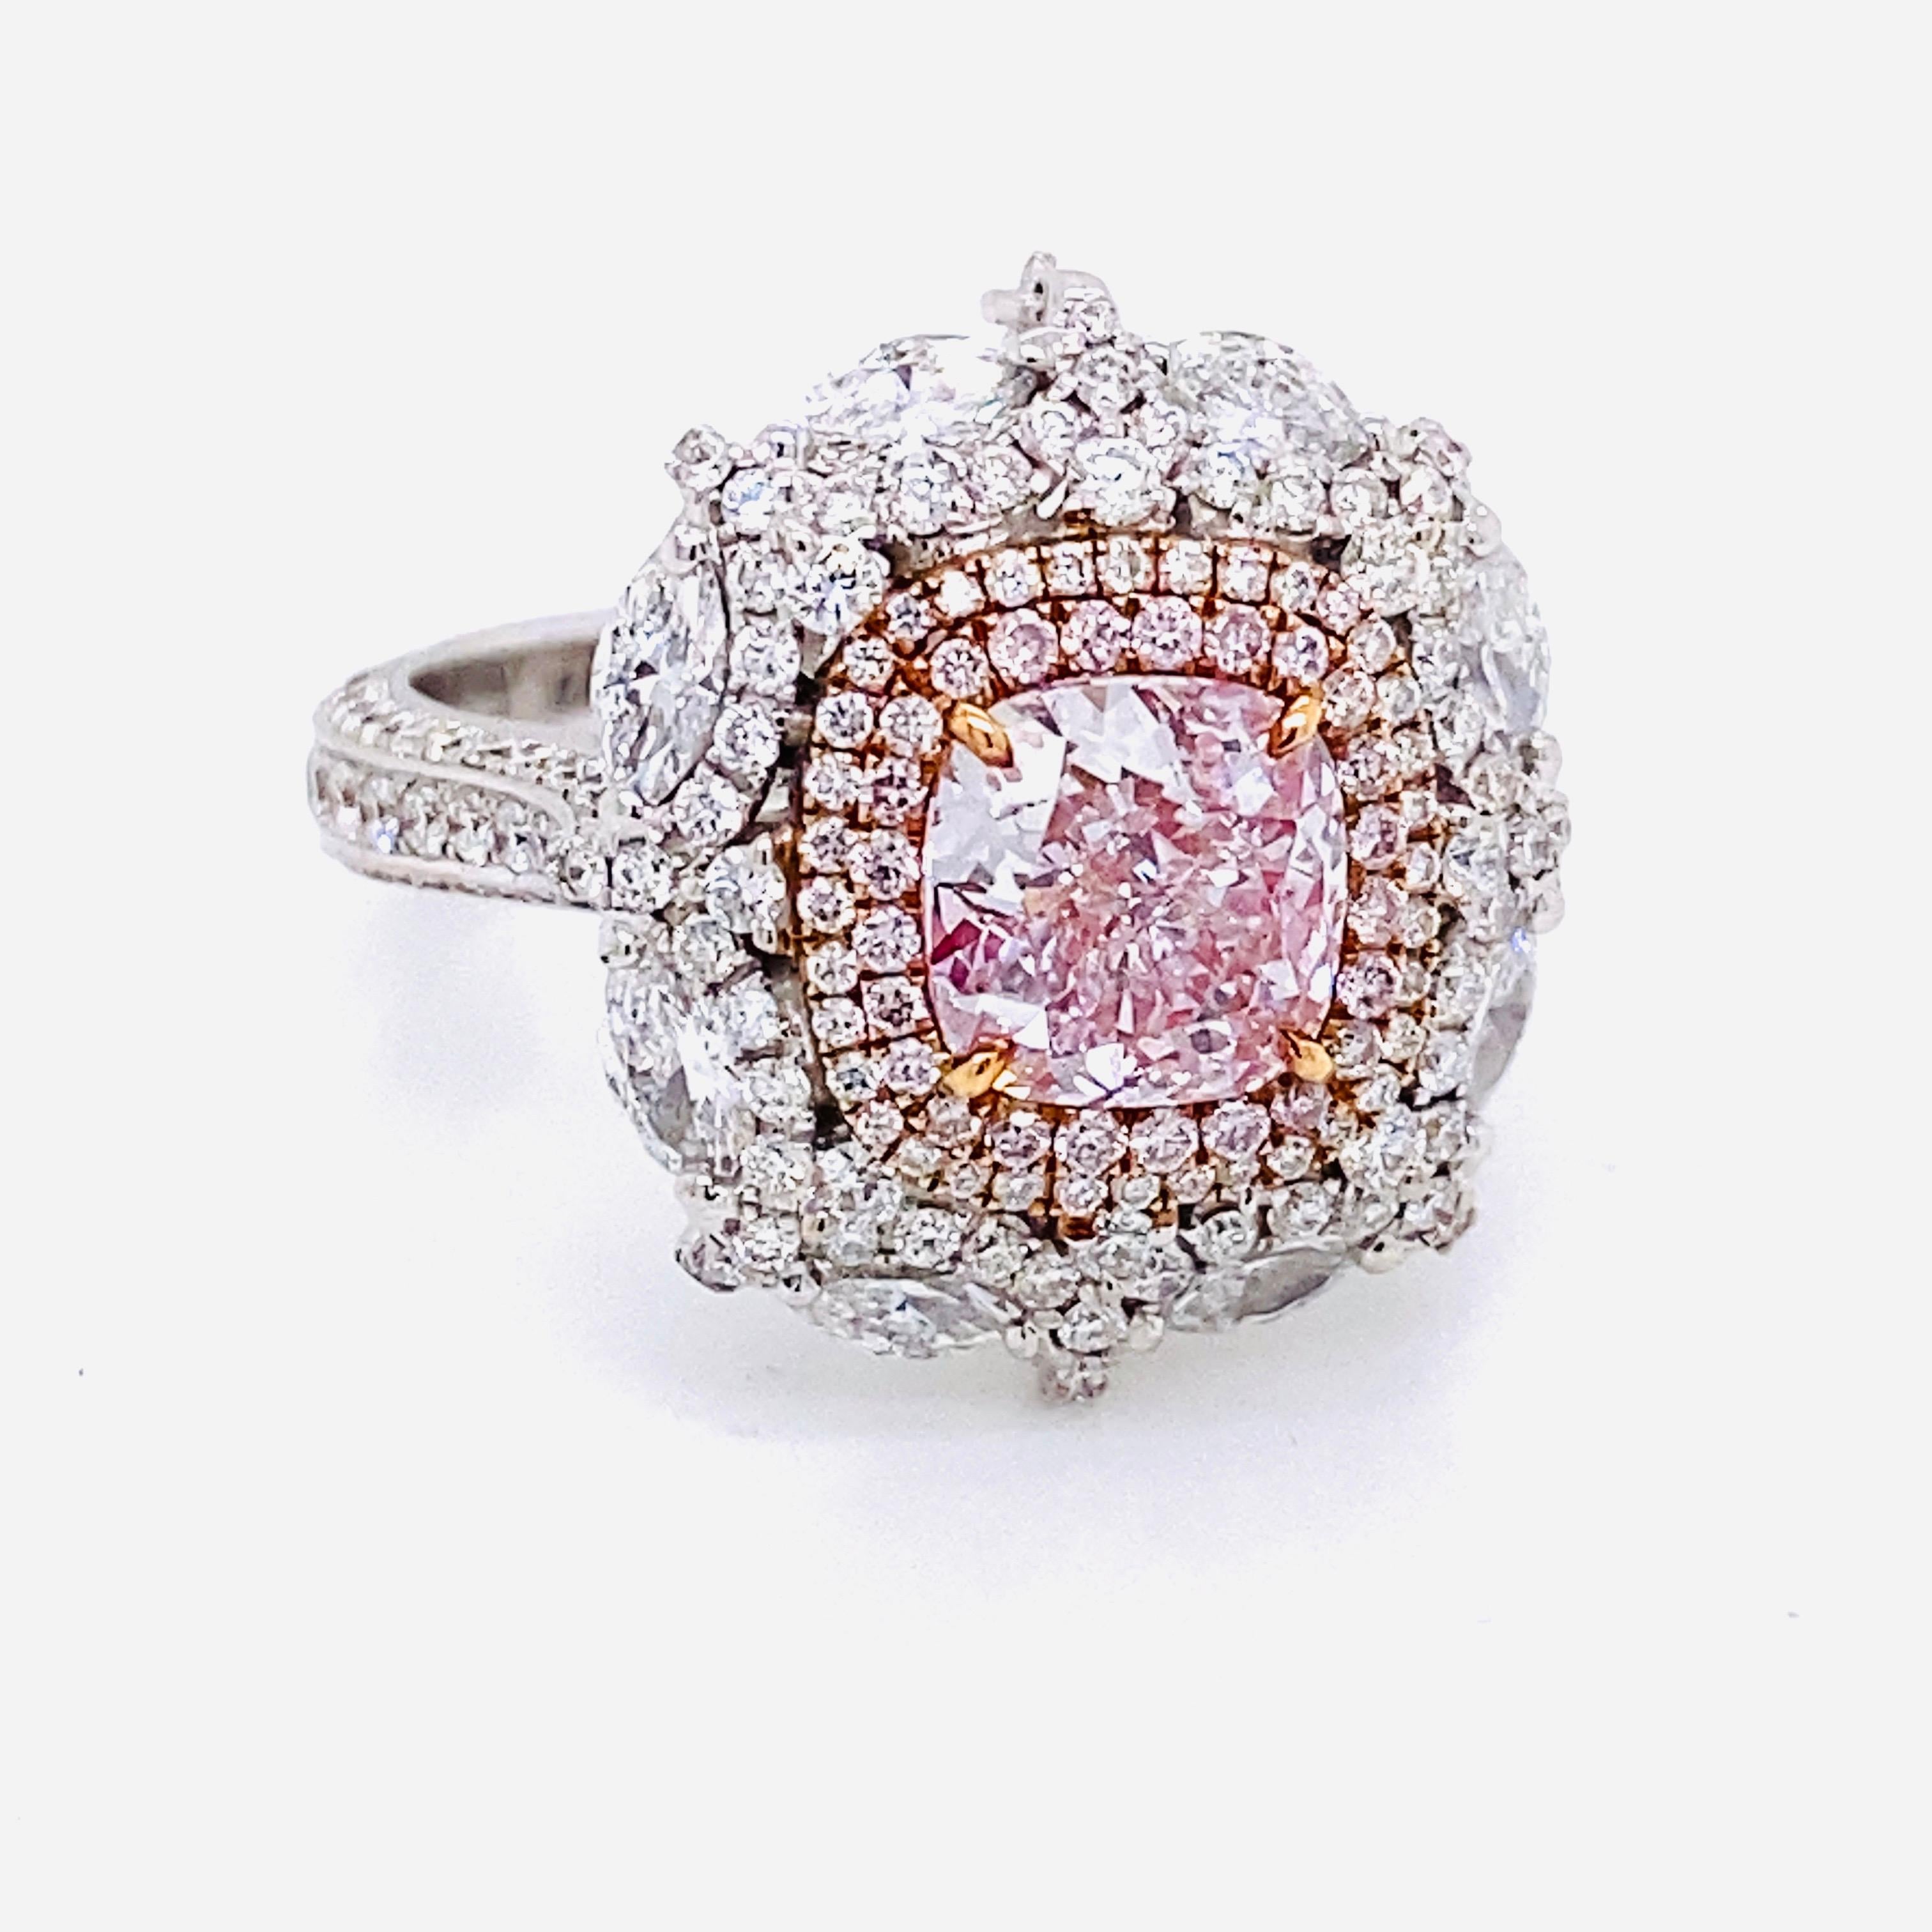 De la chambre forte d'Emilio Jewelry New York,
un magnifique diamant rose pur naturel certifié Gia de plus de 1,60 carats trône au centre de ce chef-d'œuvre. Grâce à l'expertise de l'Atelier Emilio Jewelry, après le sertissage, ce diamant rose nous